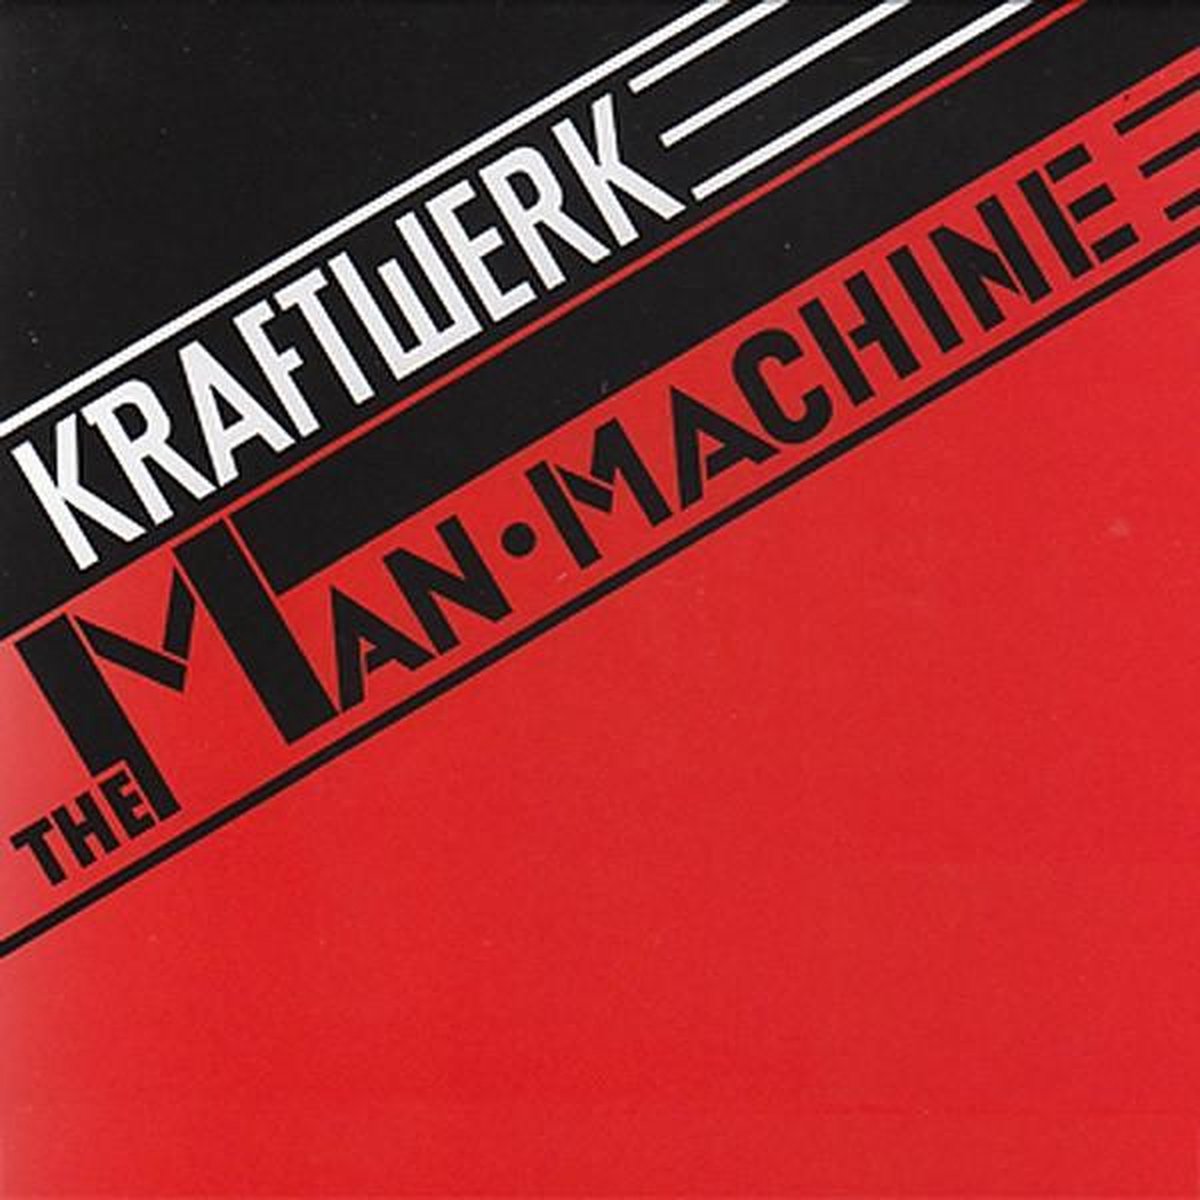 Kraftwerk - The Man Machine (Limited edition, red vinyl) (LP)